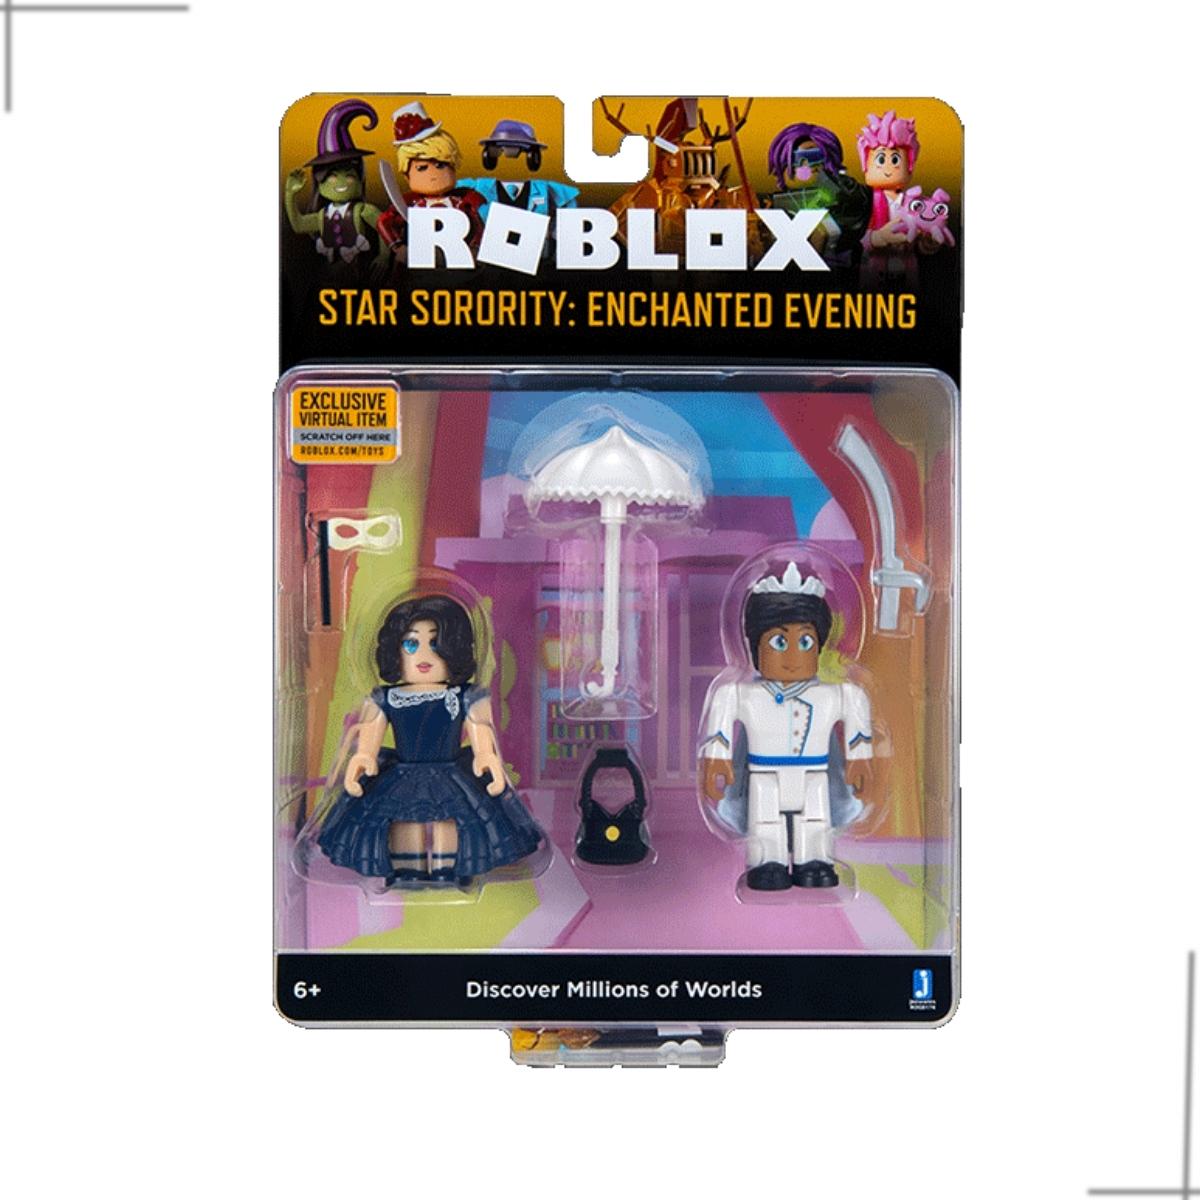 Roblox-Virtual World 6 bonecas e acessórios, jogos de animação